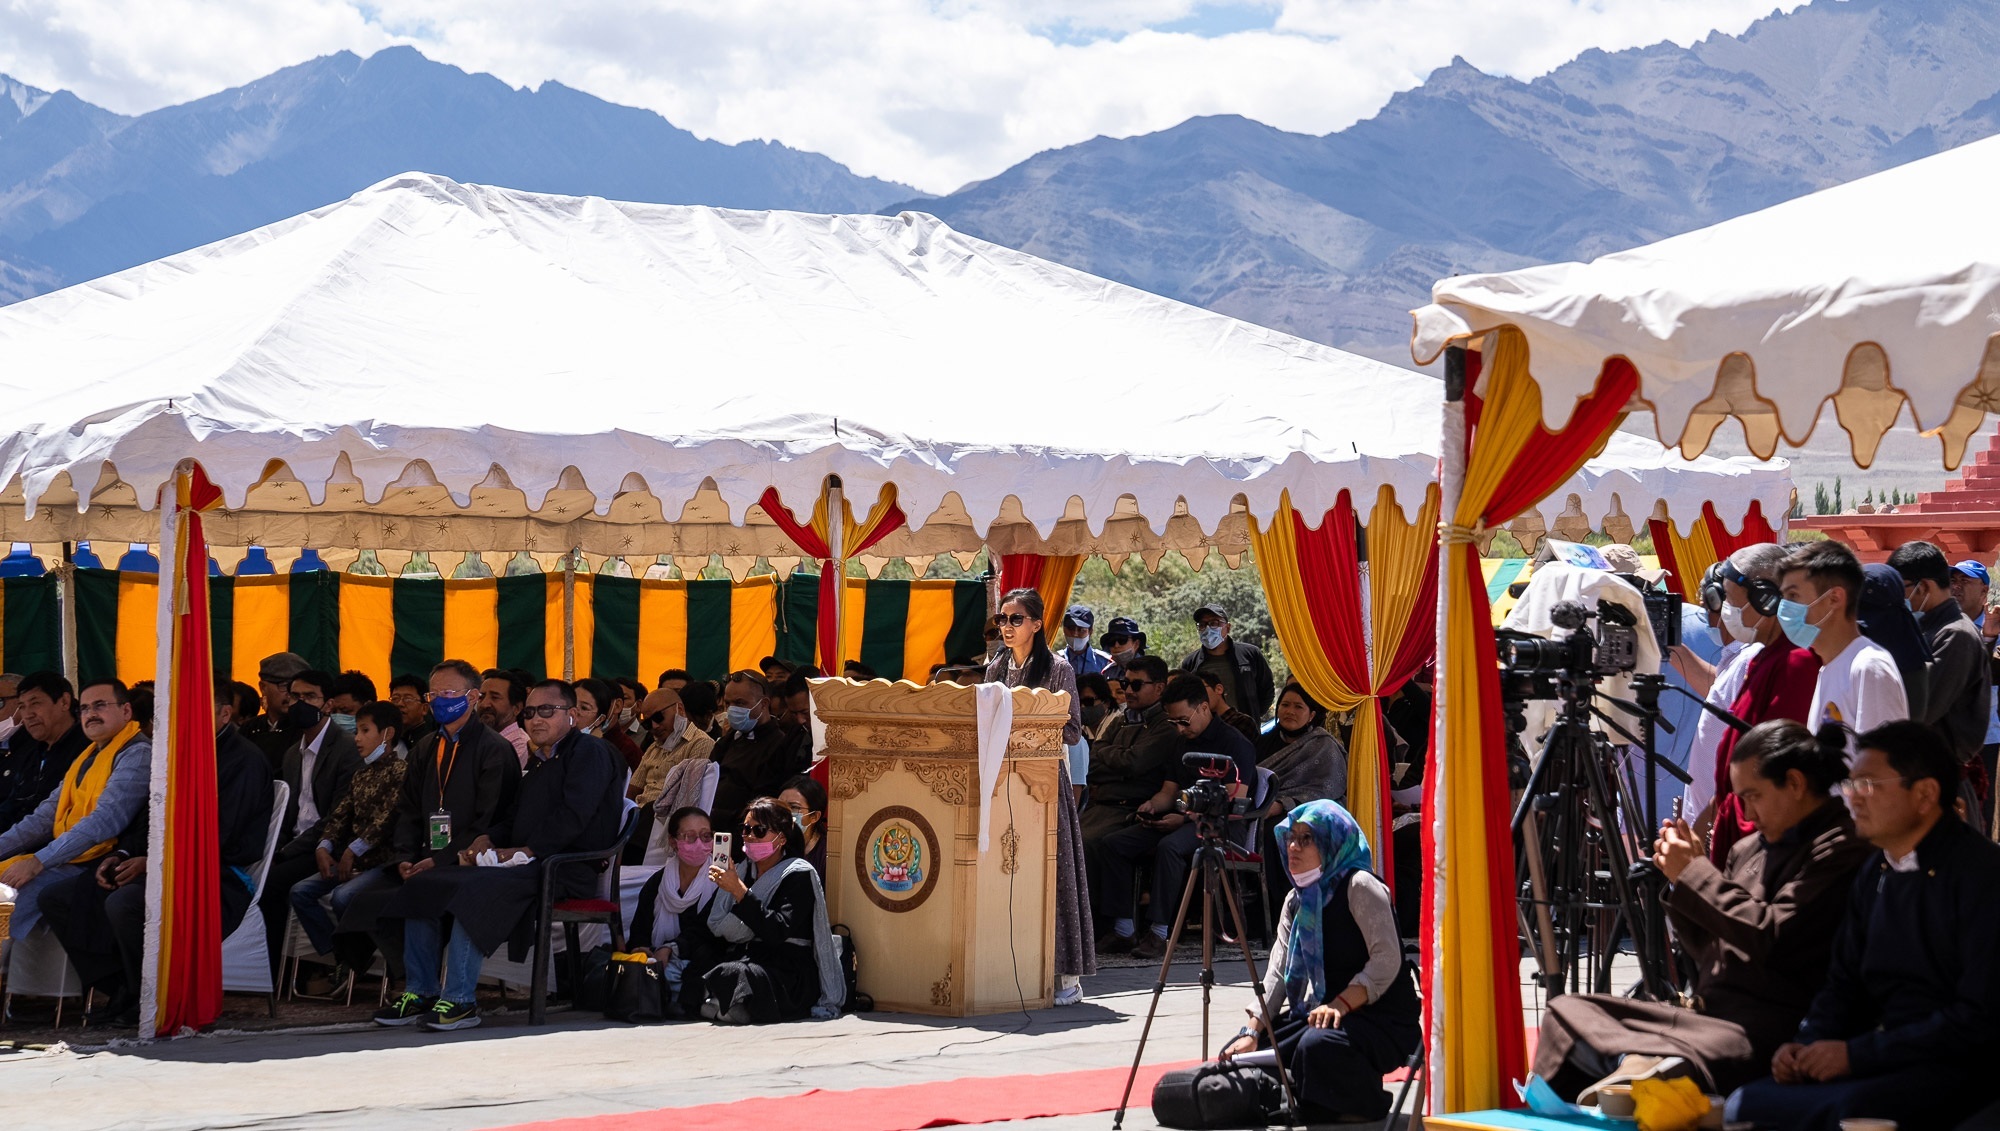 Дээрхийн Гэгээнтэн Далай Ламыг Ладакийн Автономит Уулын Хөгжлийн Зөвлөлөөс (LAHDC) зохион байгуулсан үдийн зоогийн өмнө үг хэлж байгаа нь. Энэтхэг, Ладак, УТ, Лех дахь Синдху Гат. 2022.08.23. Гэрэл зургийг Тэнзин Чойжор